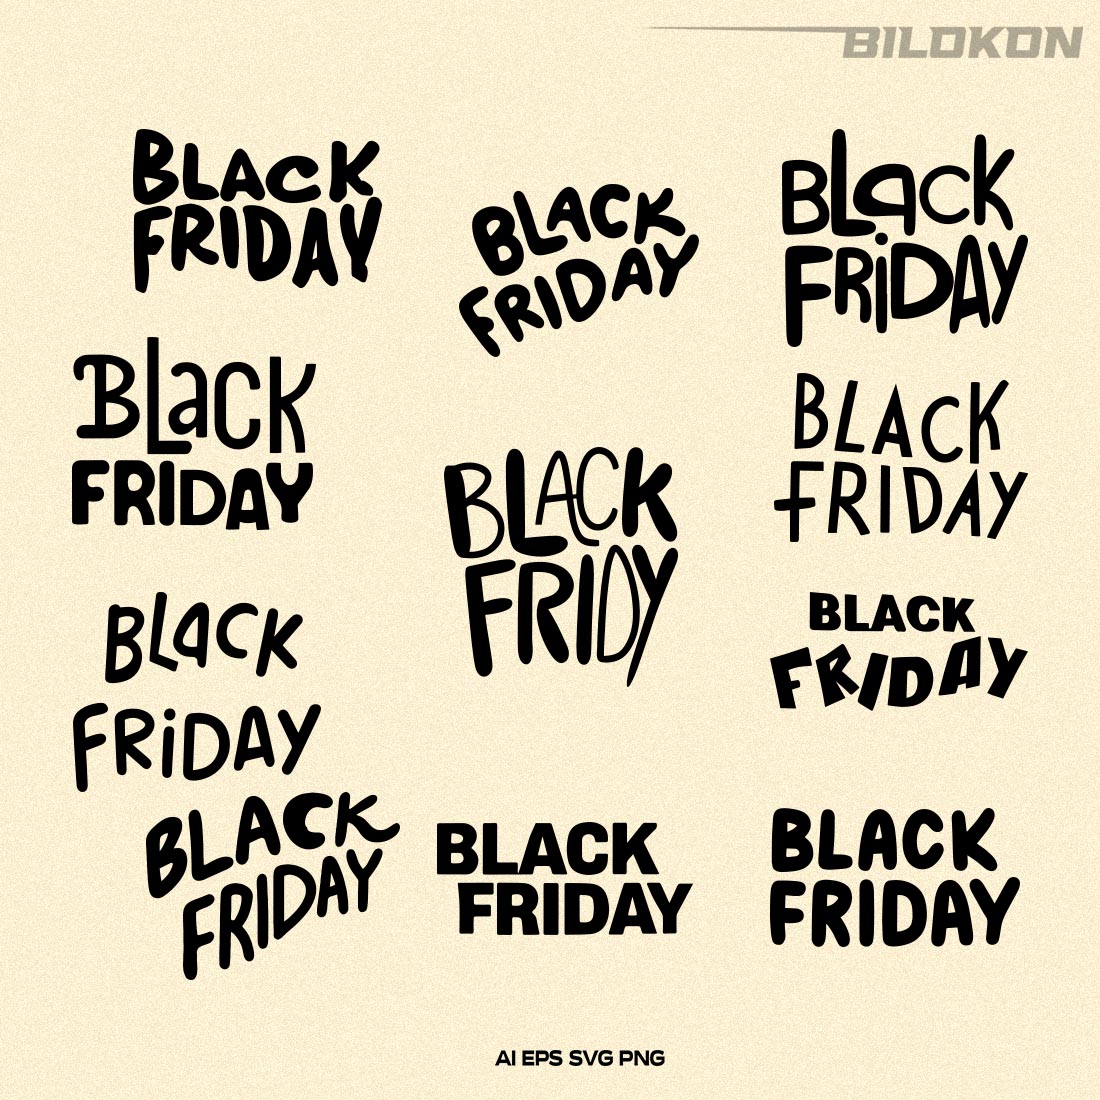 Black Friday SVG Bundle 11 File, Black Friday Sale Vector cover image.